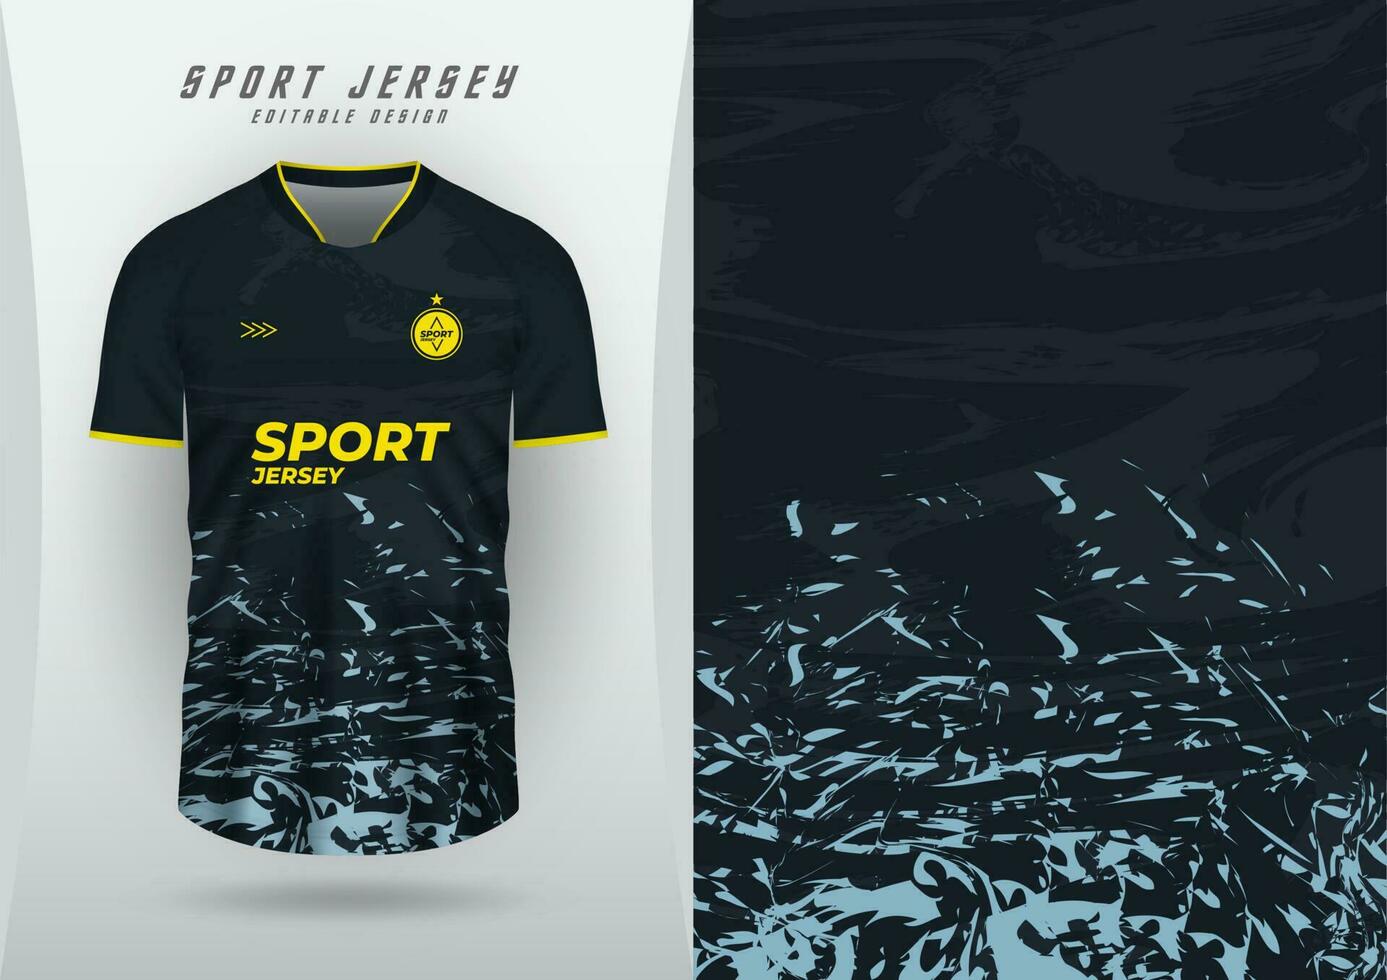 achtergrond voor sport- Jersey, voetbal Jersey, rennen Jersey, racing Jersey, zwart en blauw patroon. vector